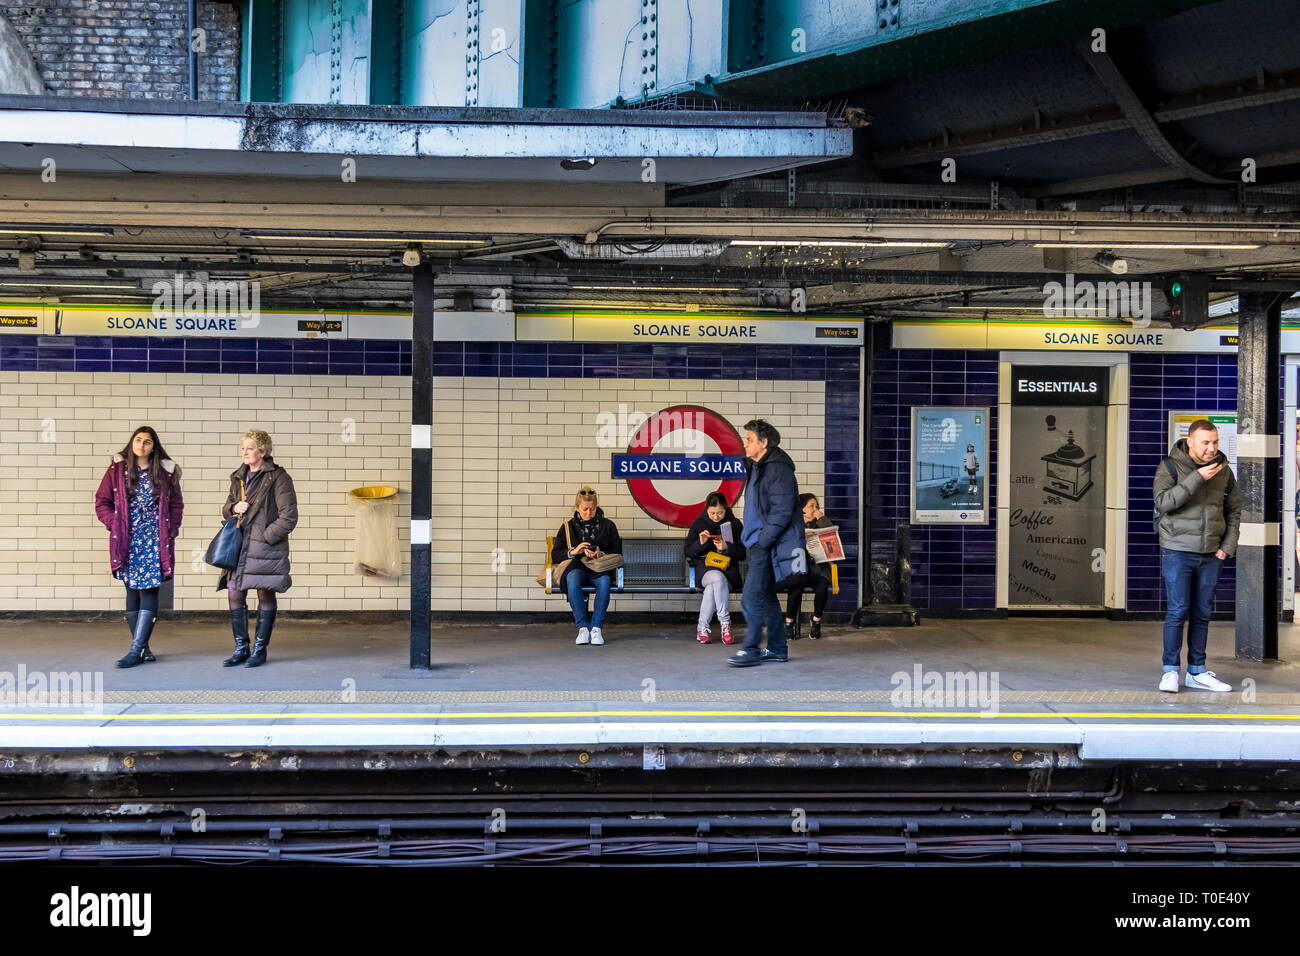 Persone sulla piattaforma hte in attesa di un treno sotterraneo alla stazione della metropolitana di Sloane Square, Londra, Regno Unito Foto Stock